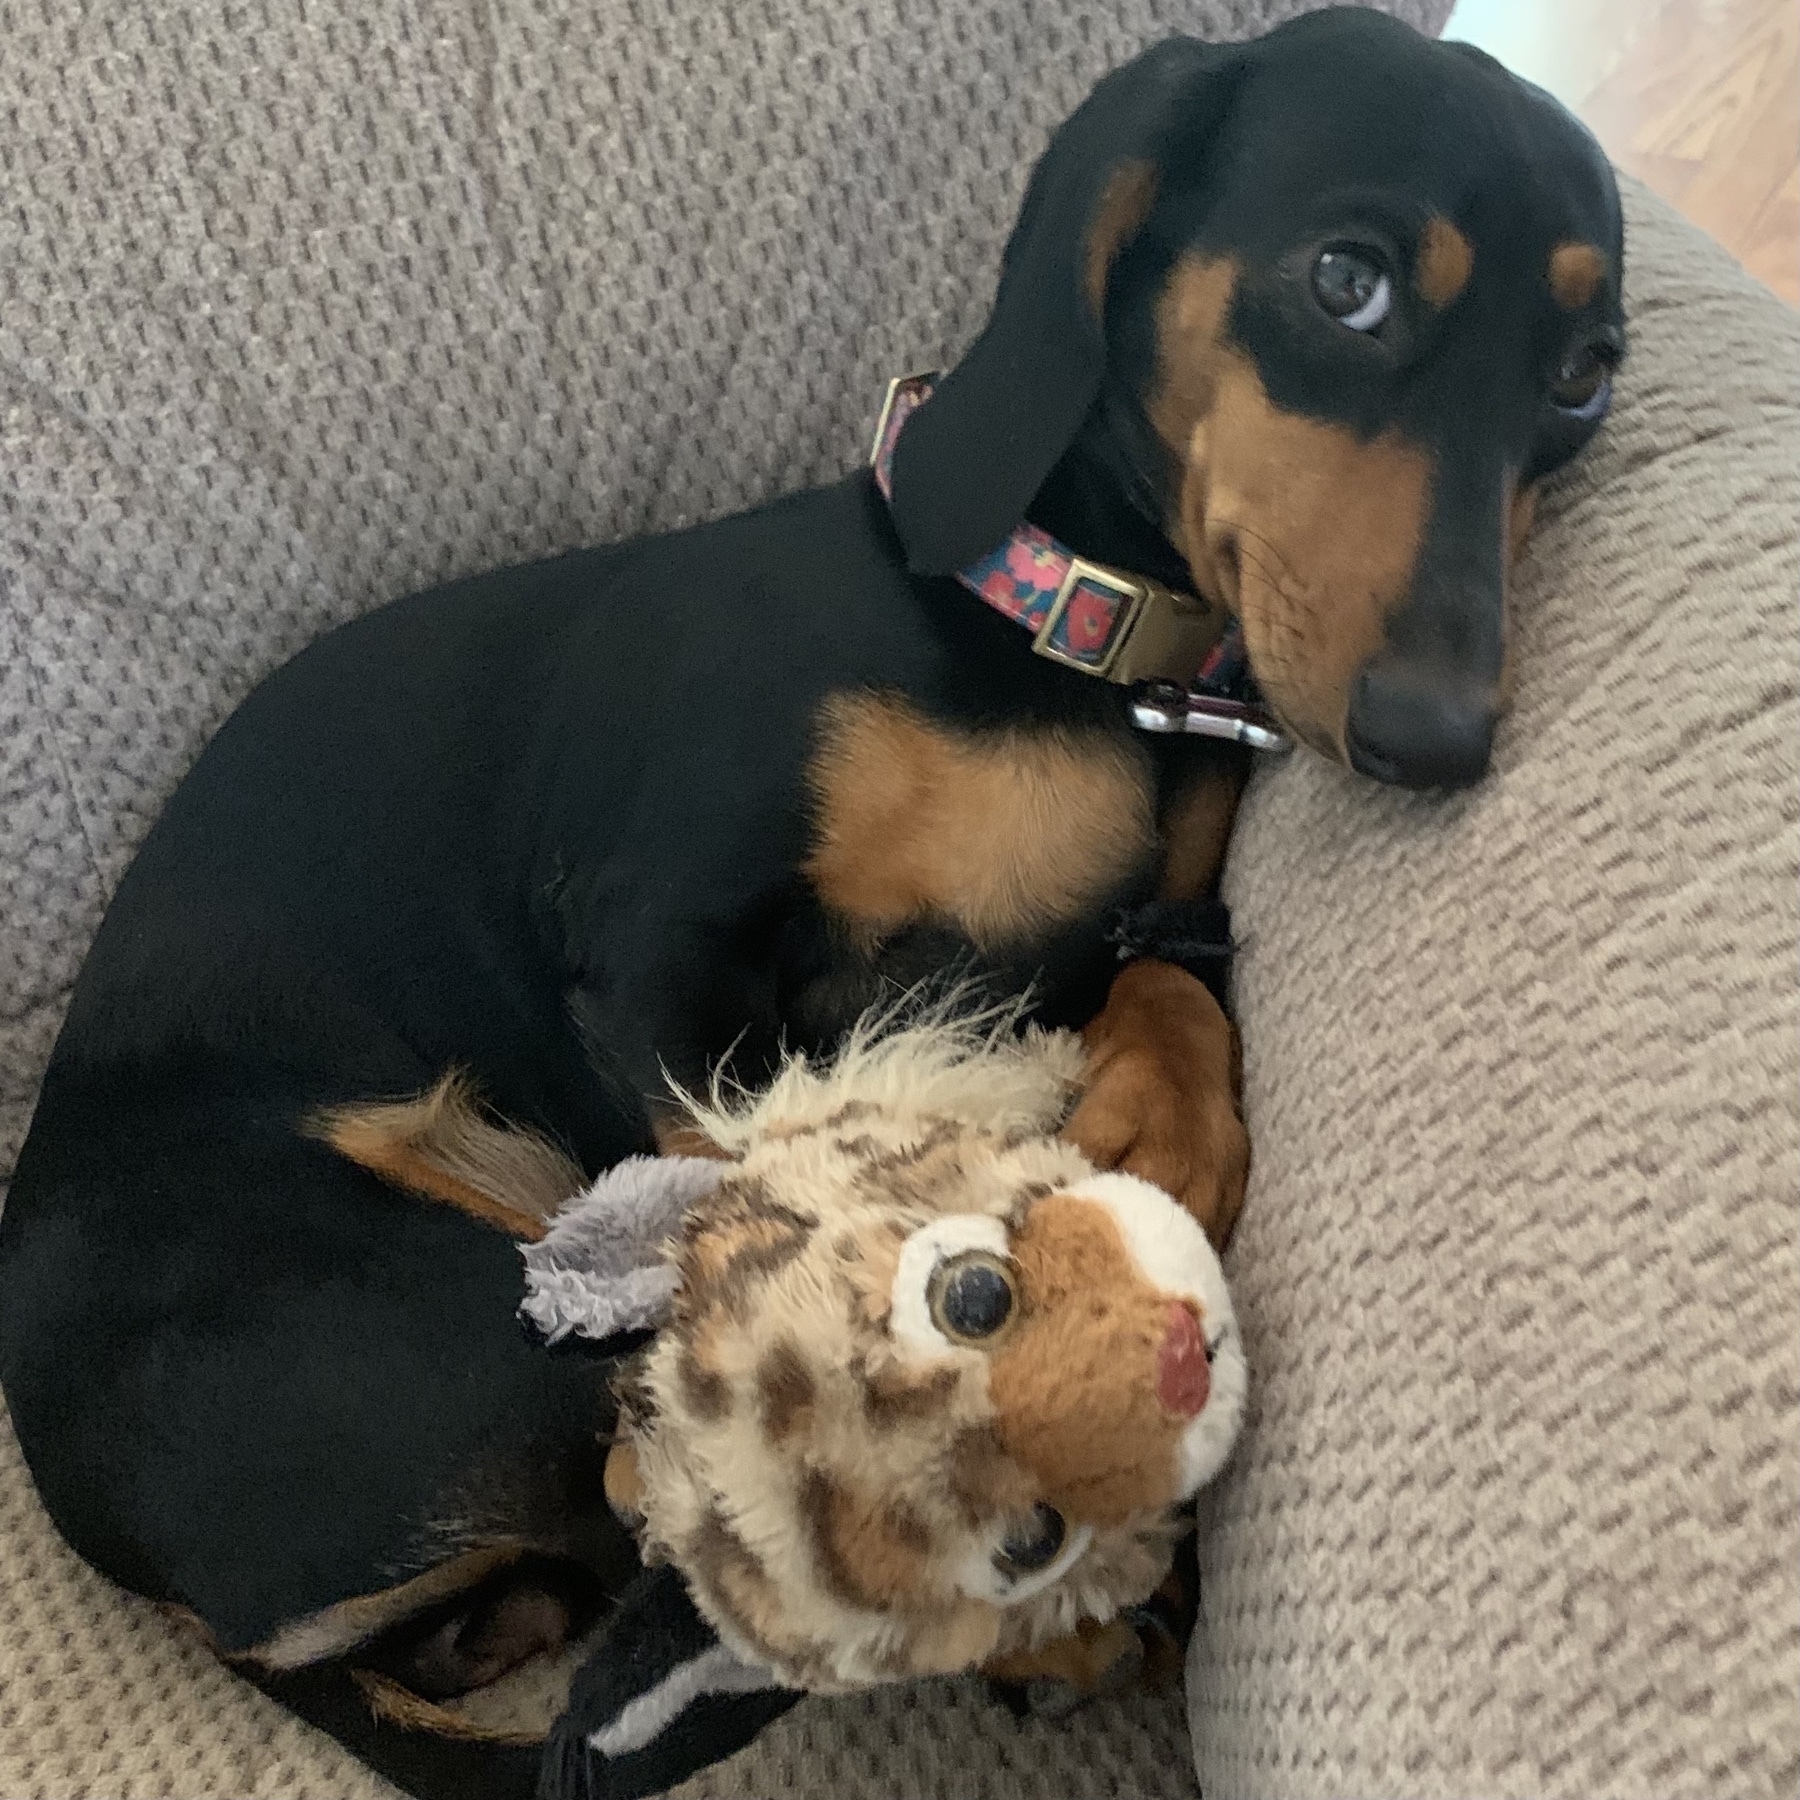 Dachshund snuggling a stuffed animal